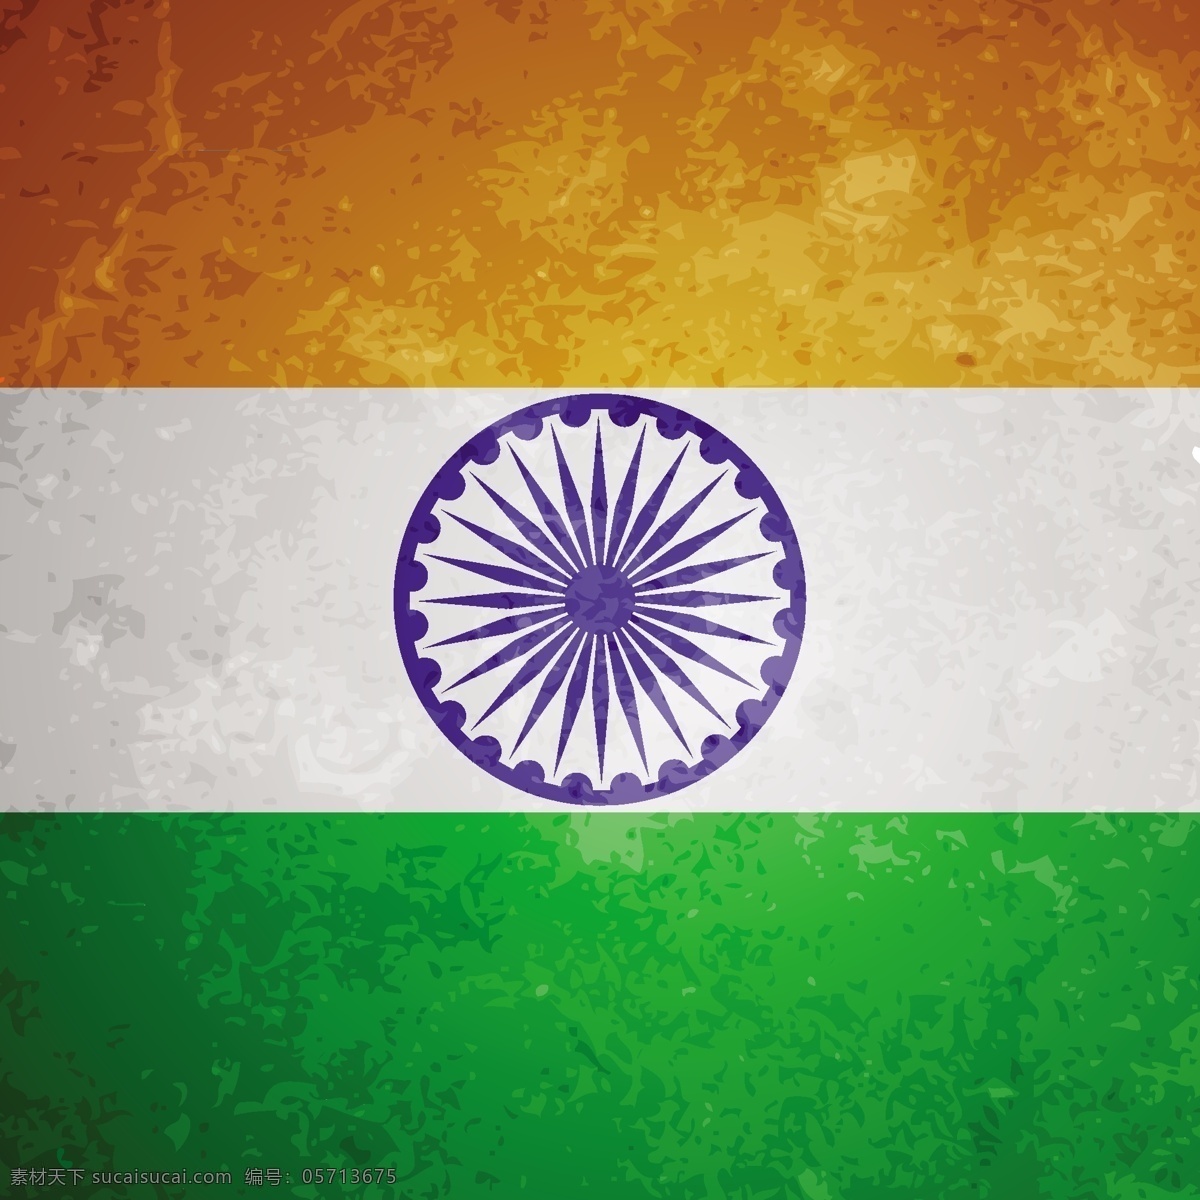 印度 国旗 蹩脚 背景 旗 节 假日 和平 国家 大 下 自由 爱国 一月 独立 民主 民族的脉轮 共和国宪法 肮脏的 绿色